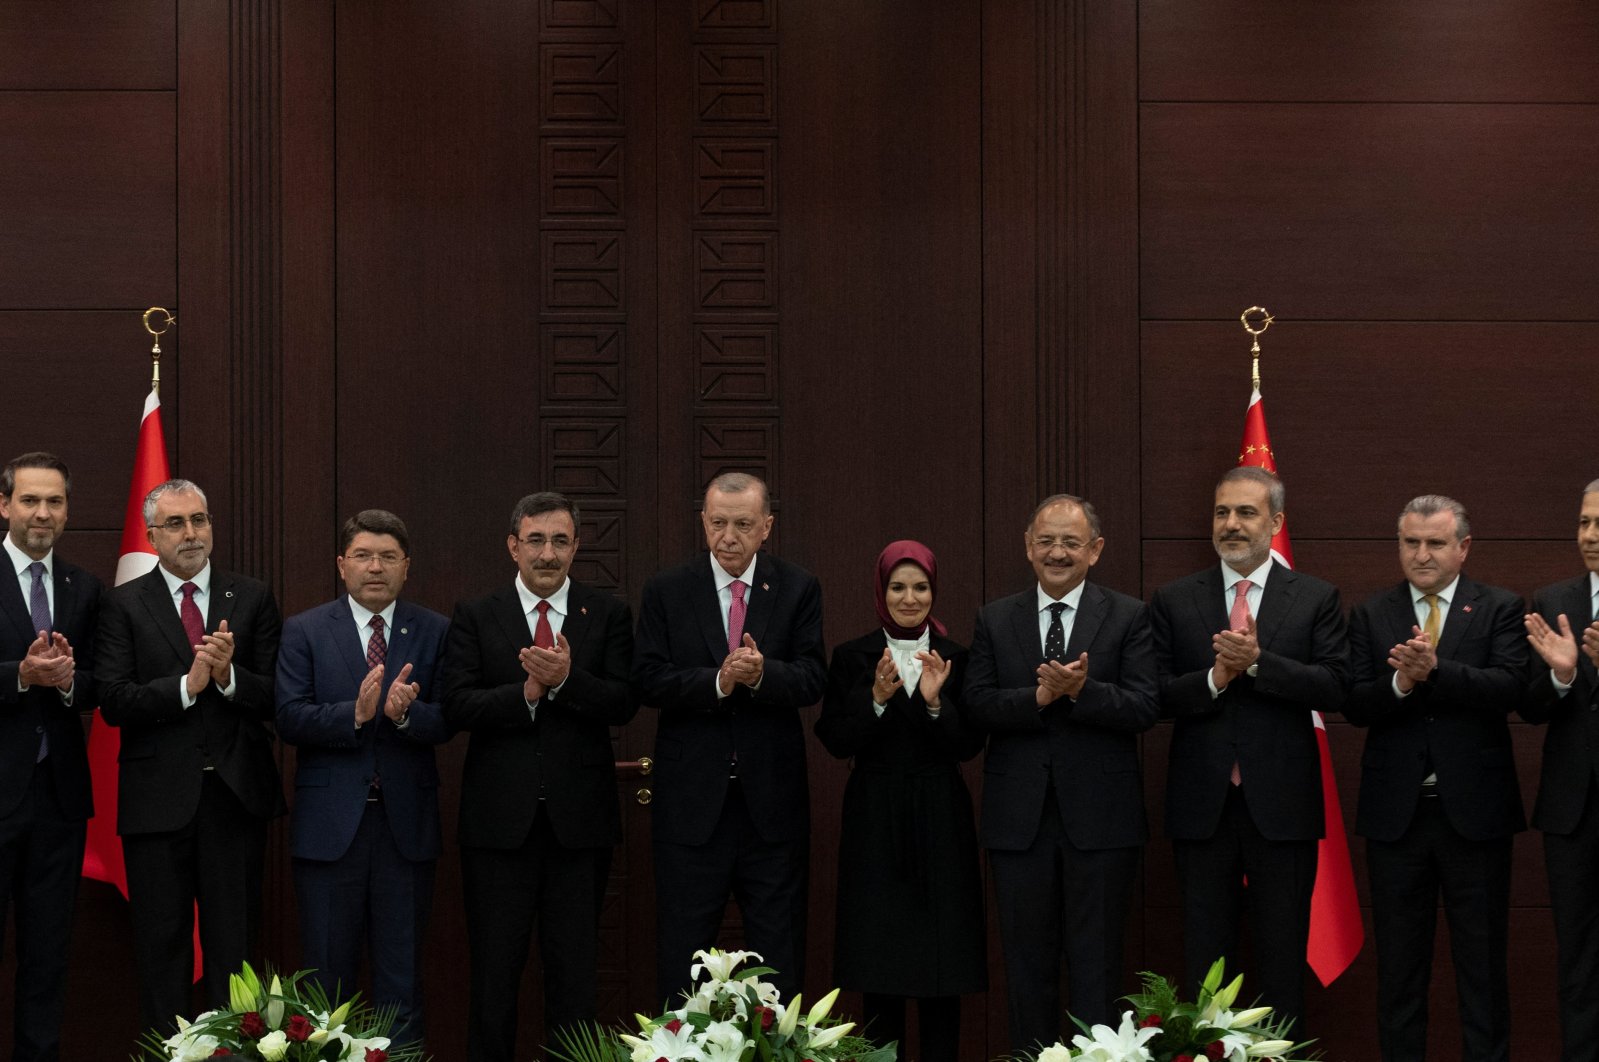 Sorotan kabinet baru Erdoğan: Ekonomi, diplomasi, dan keamanan